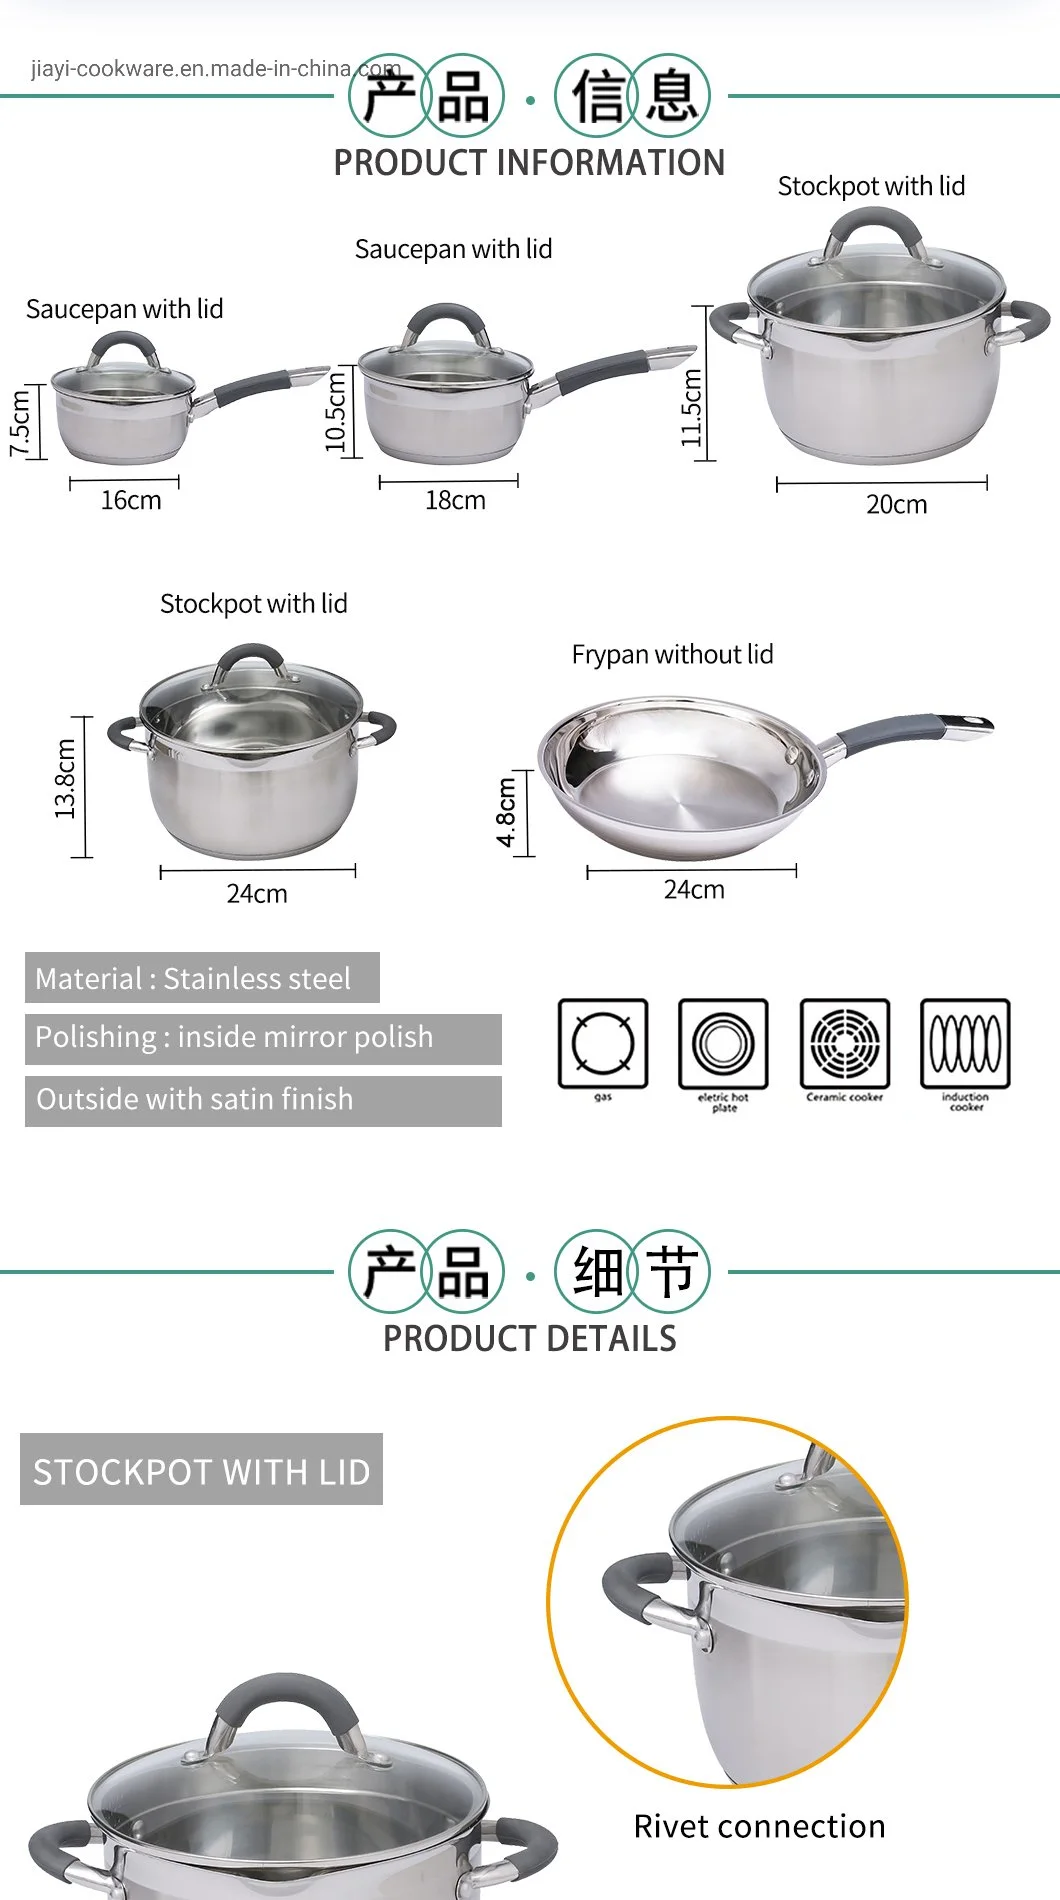 Juego de utensilios de cocina de inducción multifuncional de acero inoxidable 304 / Juego de olla común / Olla de cocina